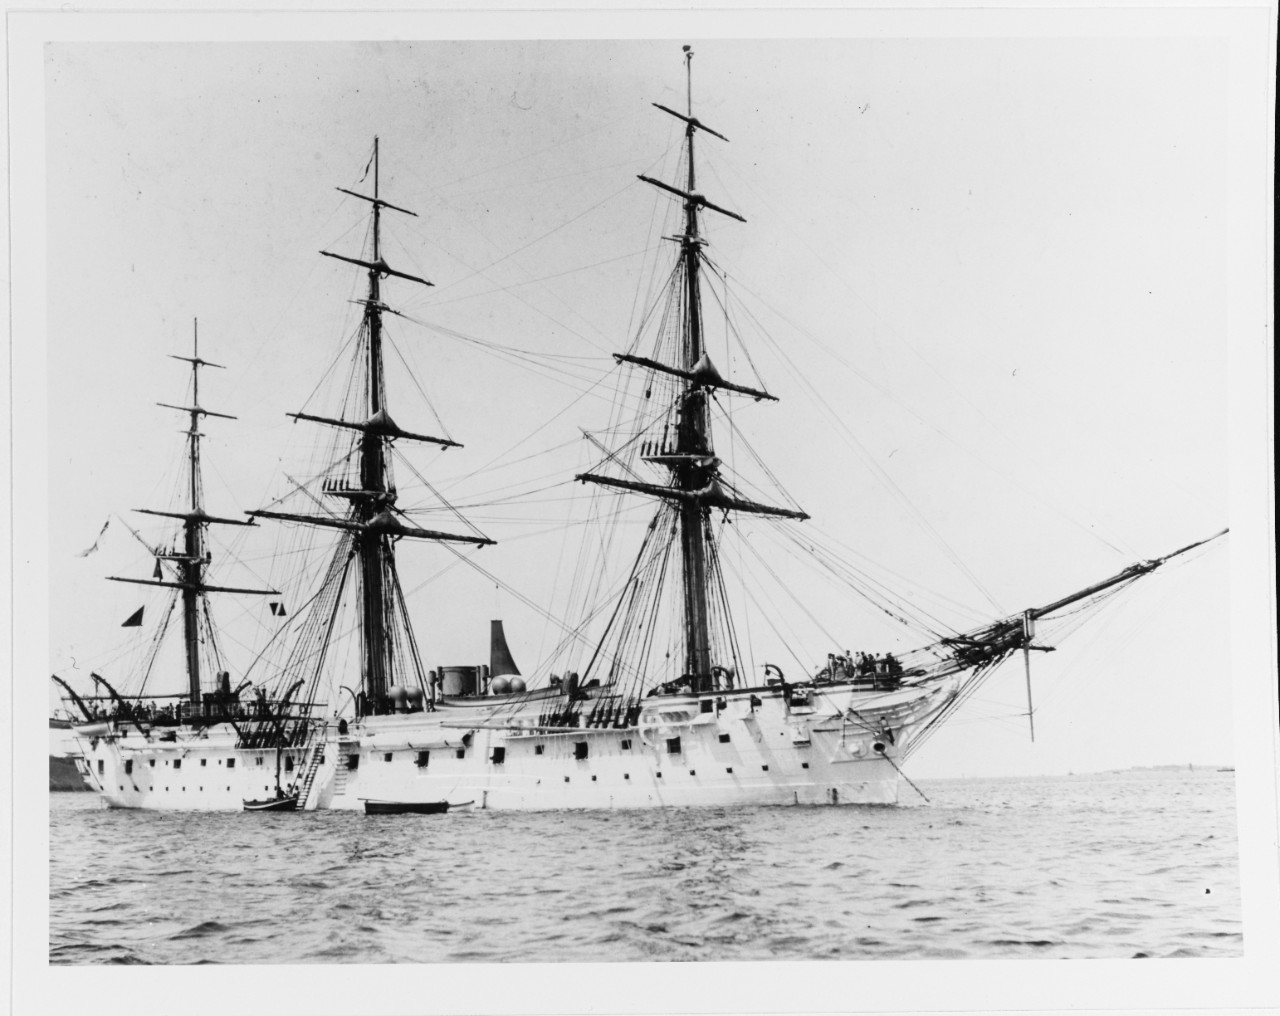 STEIN (German cruiser, 1879-1920)